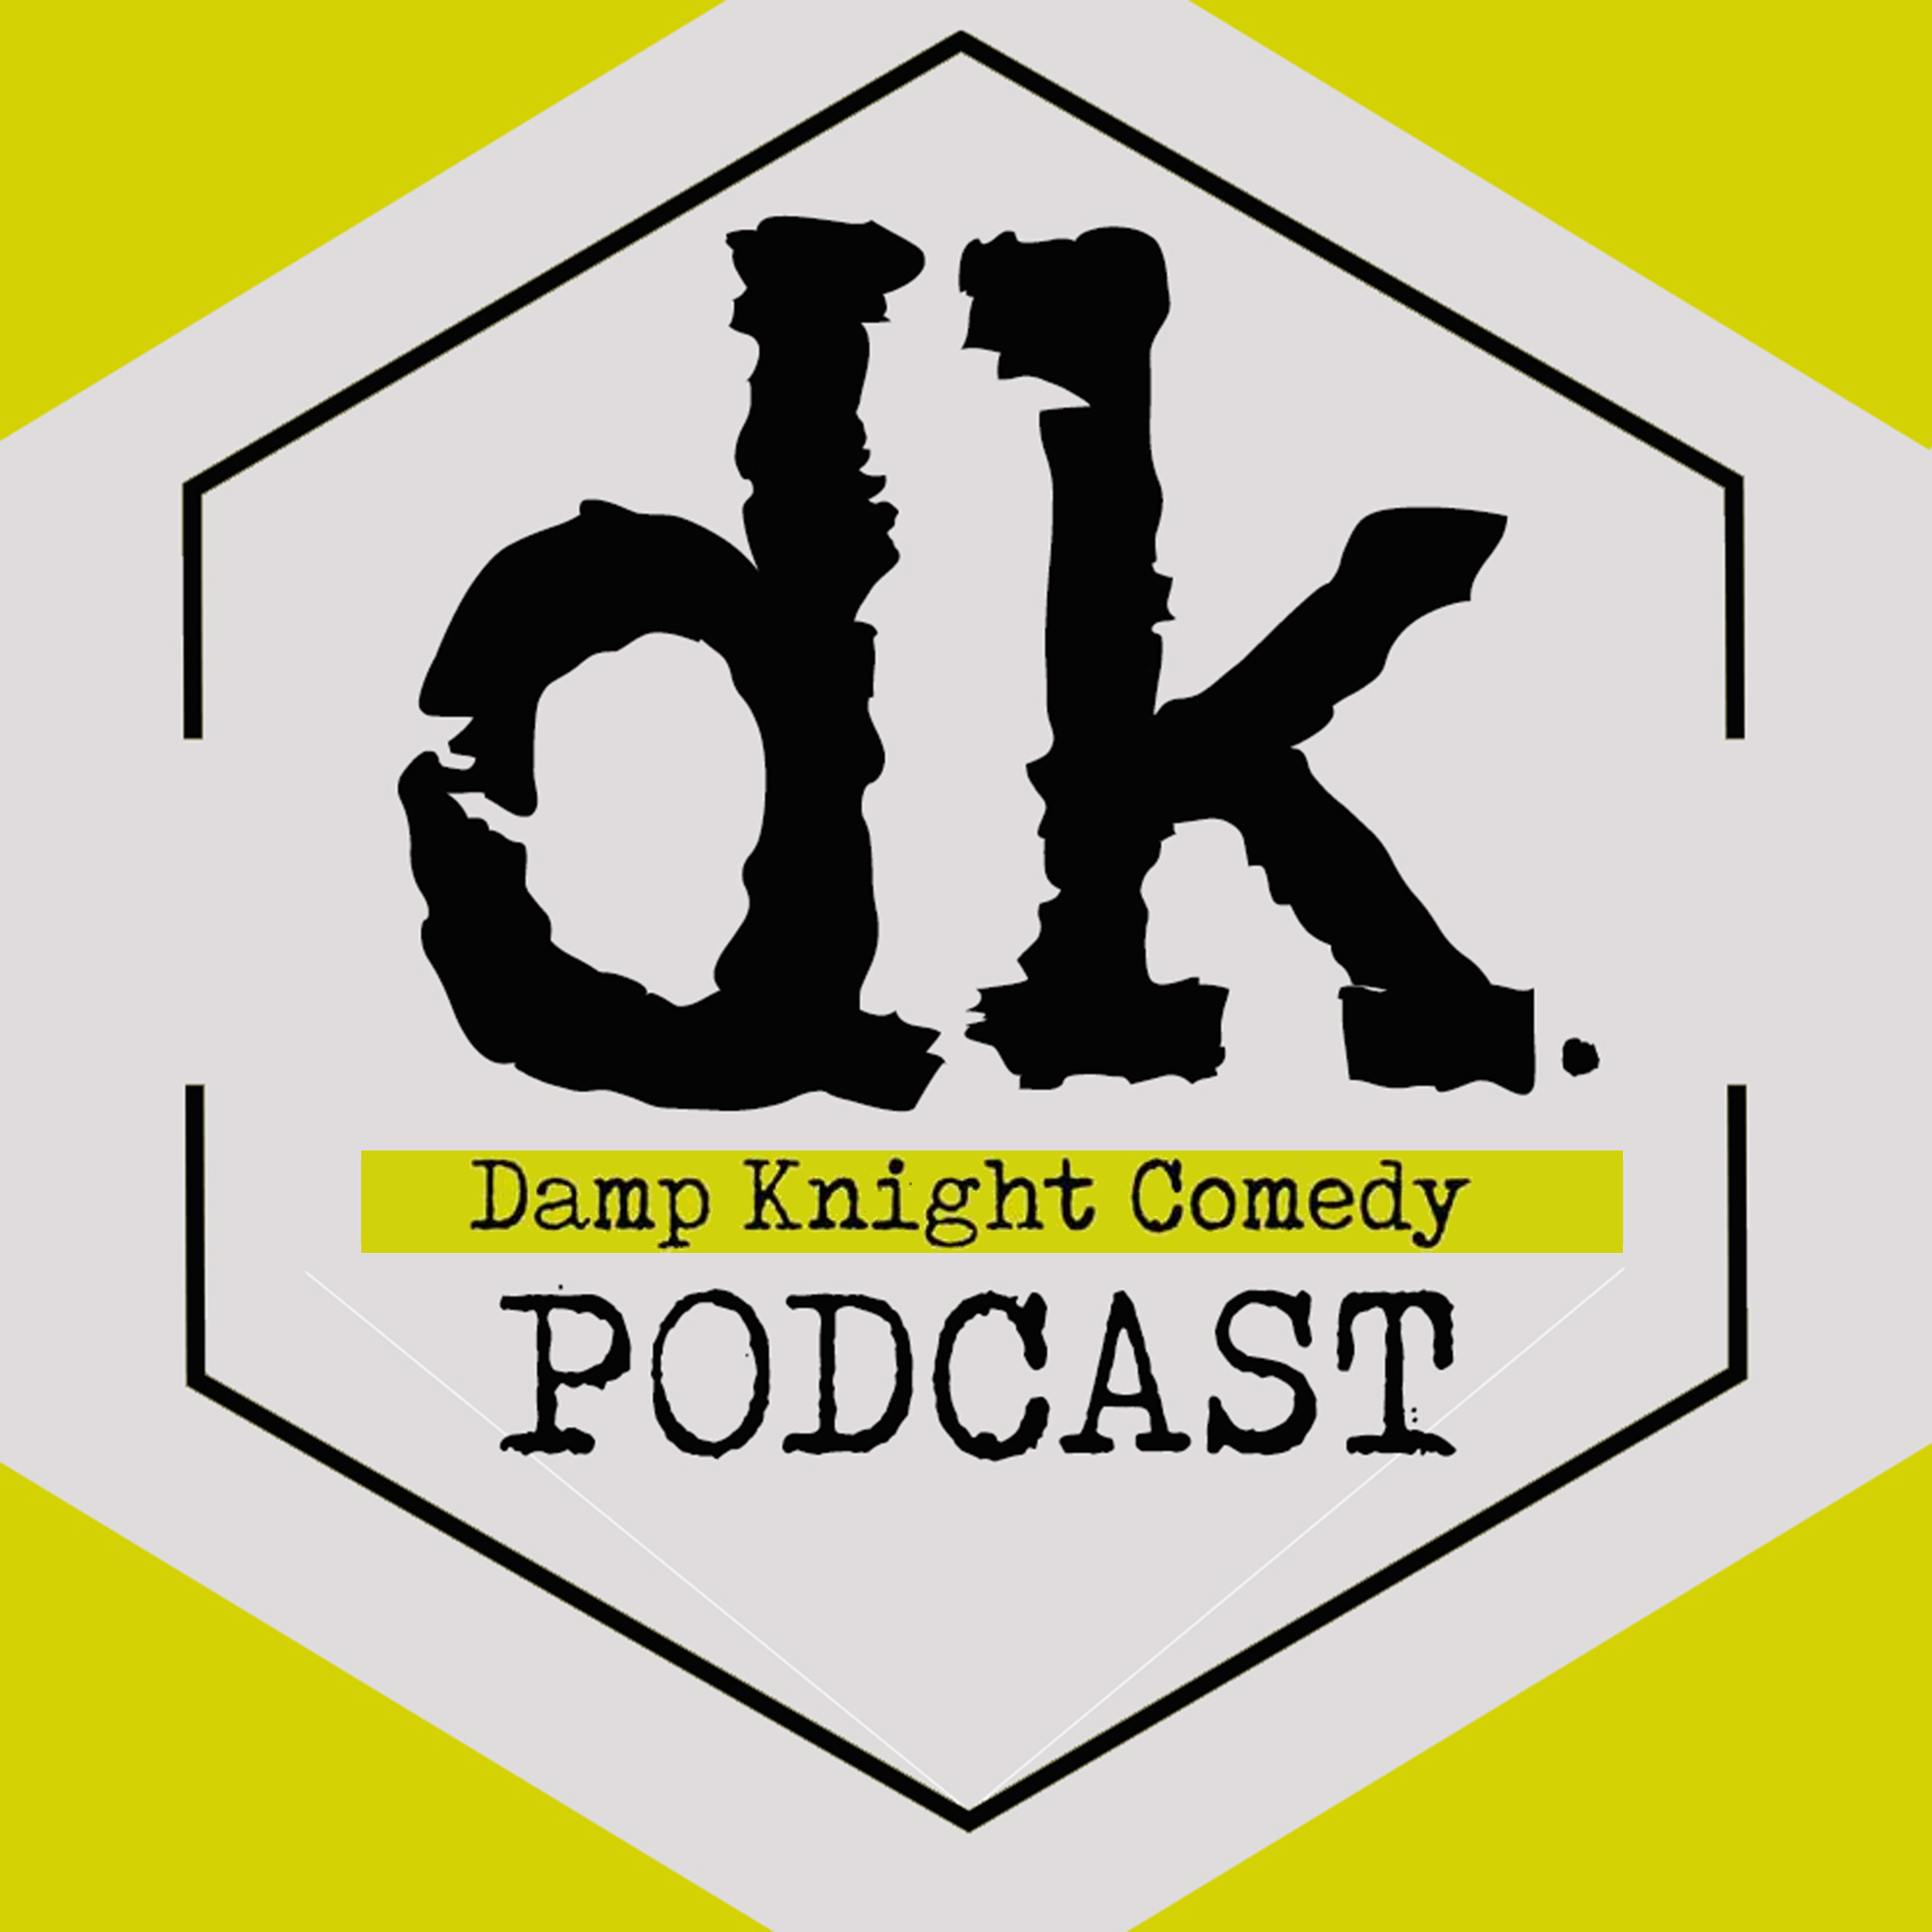 DK Podcast Ep 31 - On Fleek